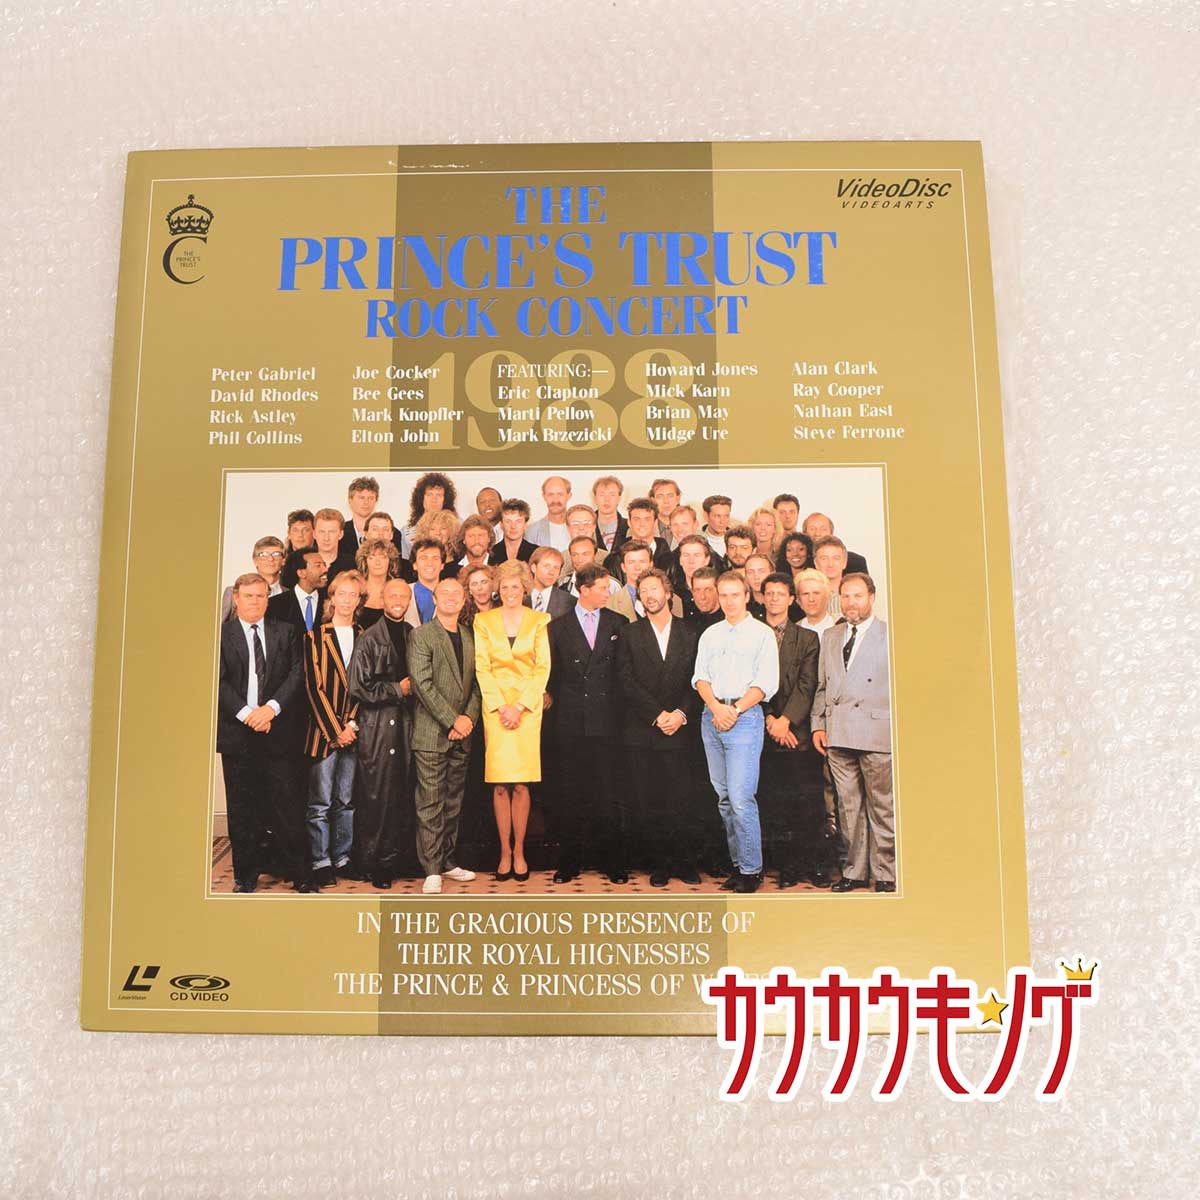 【中古】LD /レーザーディスク THE PRINCE'S TRUST ROCK CONCERT 1988